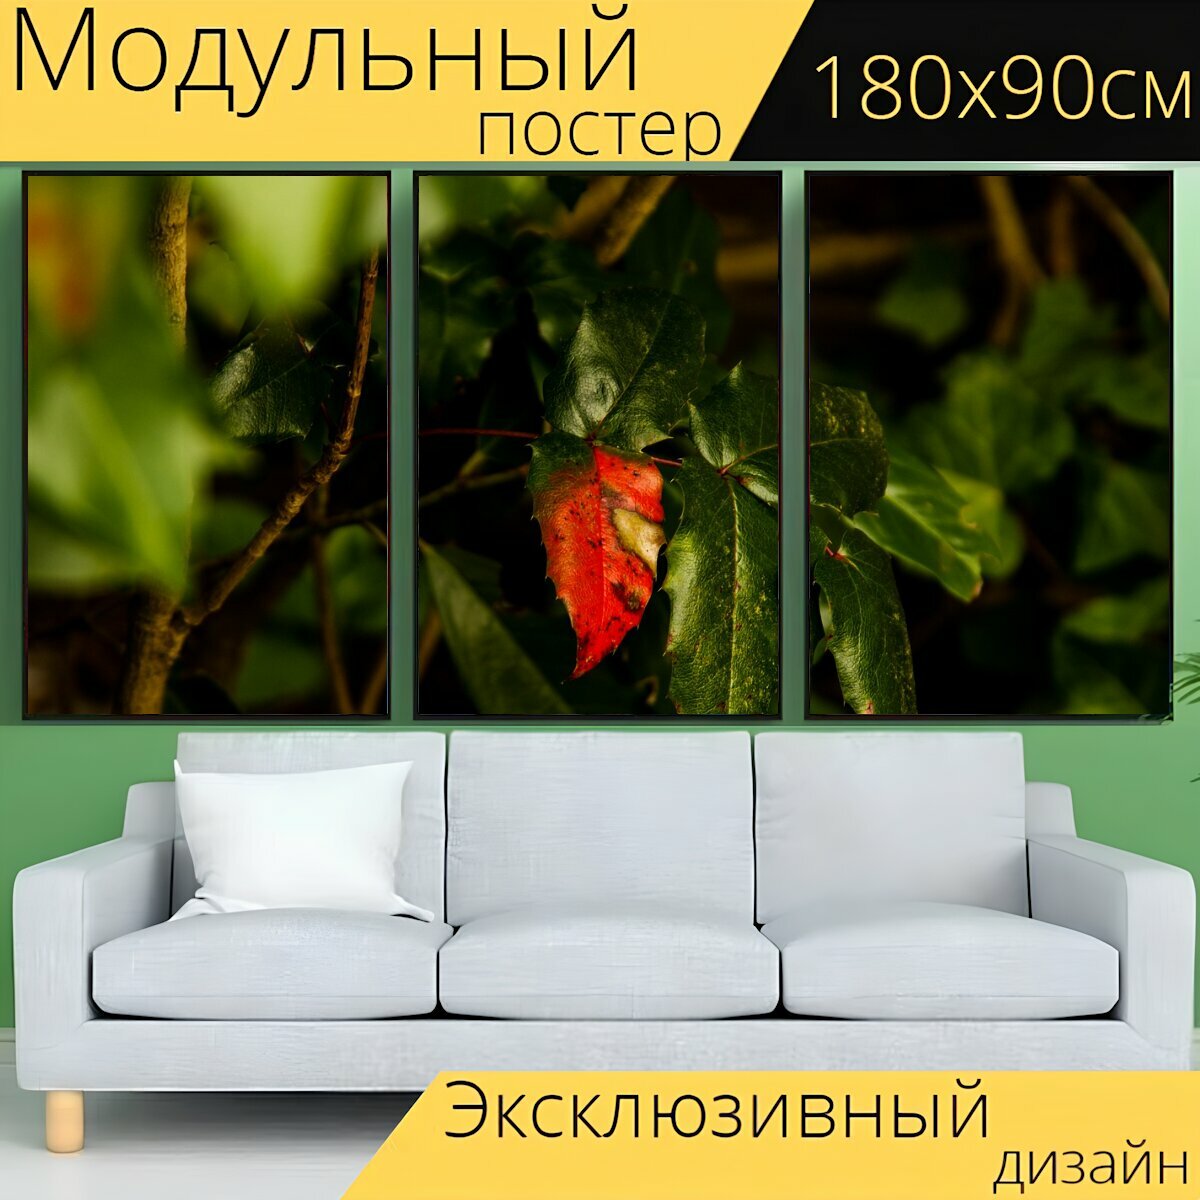 Модульный постер "Листья, красный, зеленый" 180 x 90 см. для интерьера